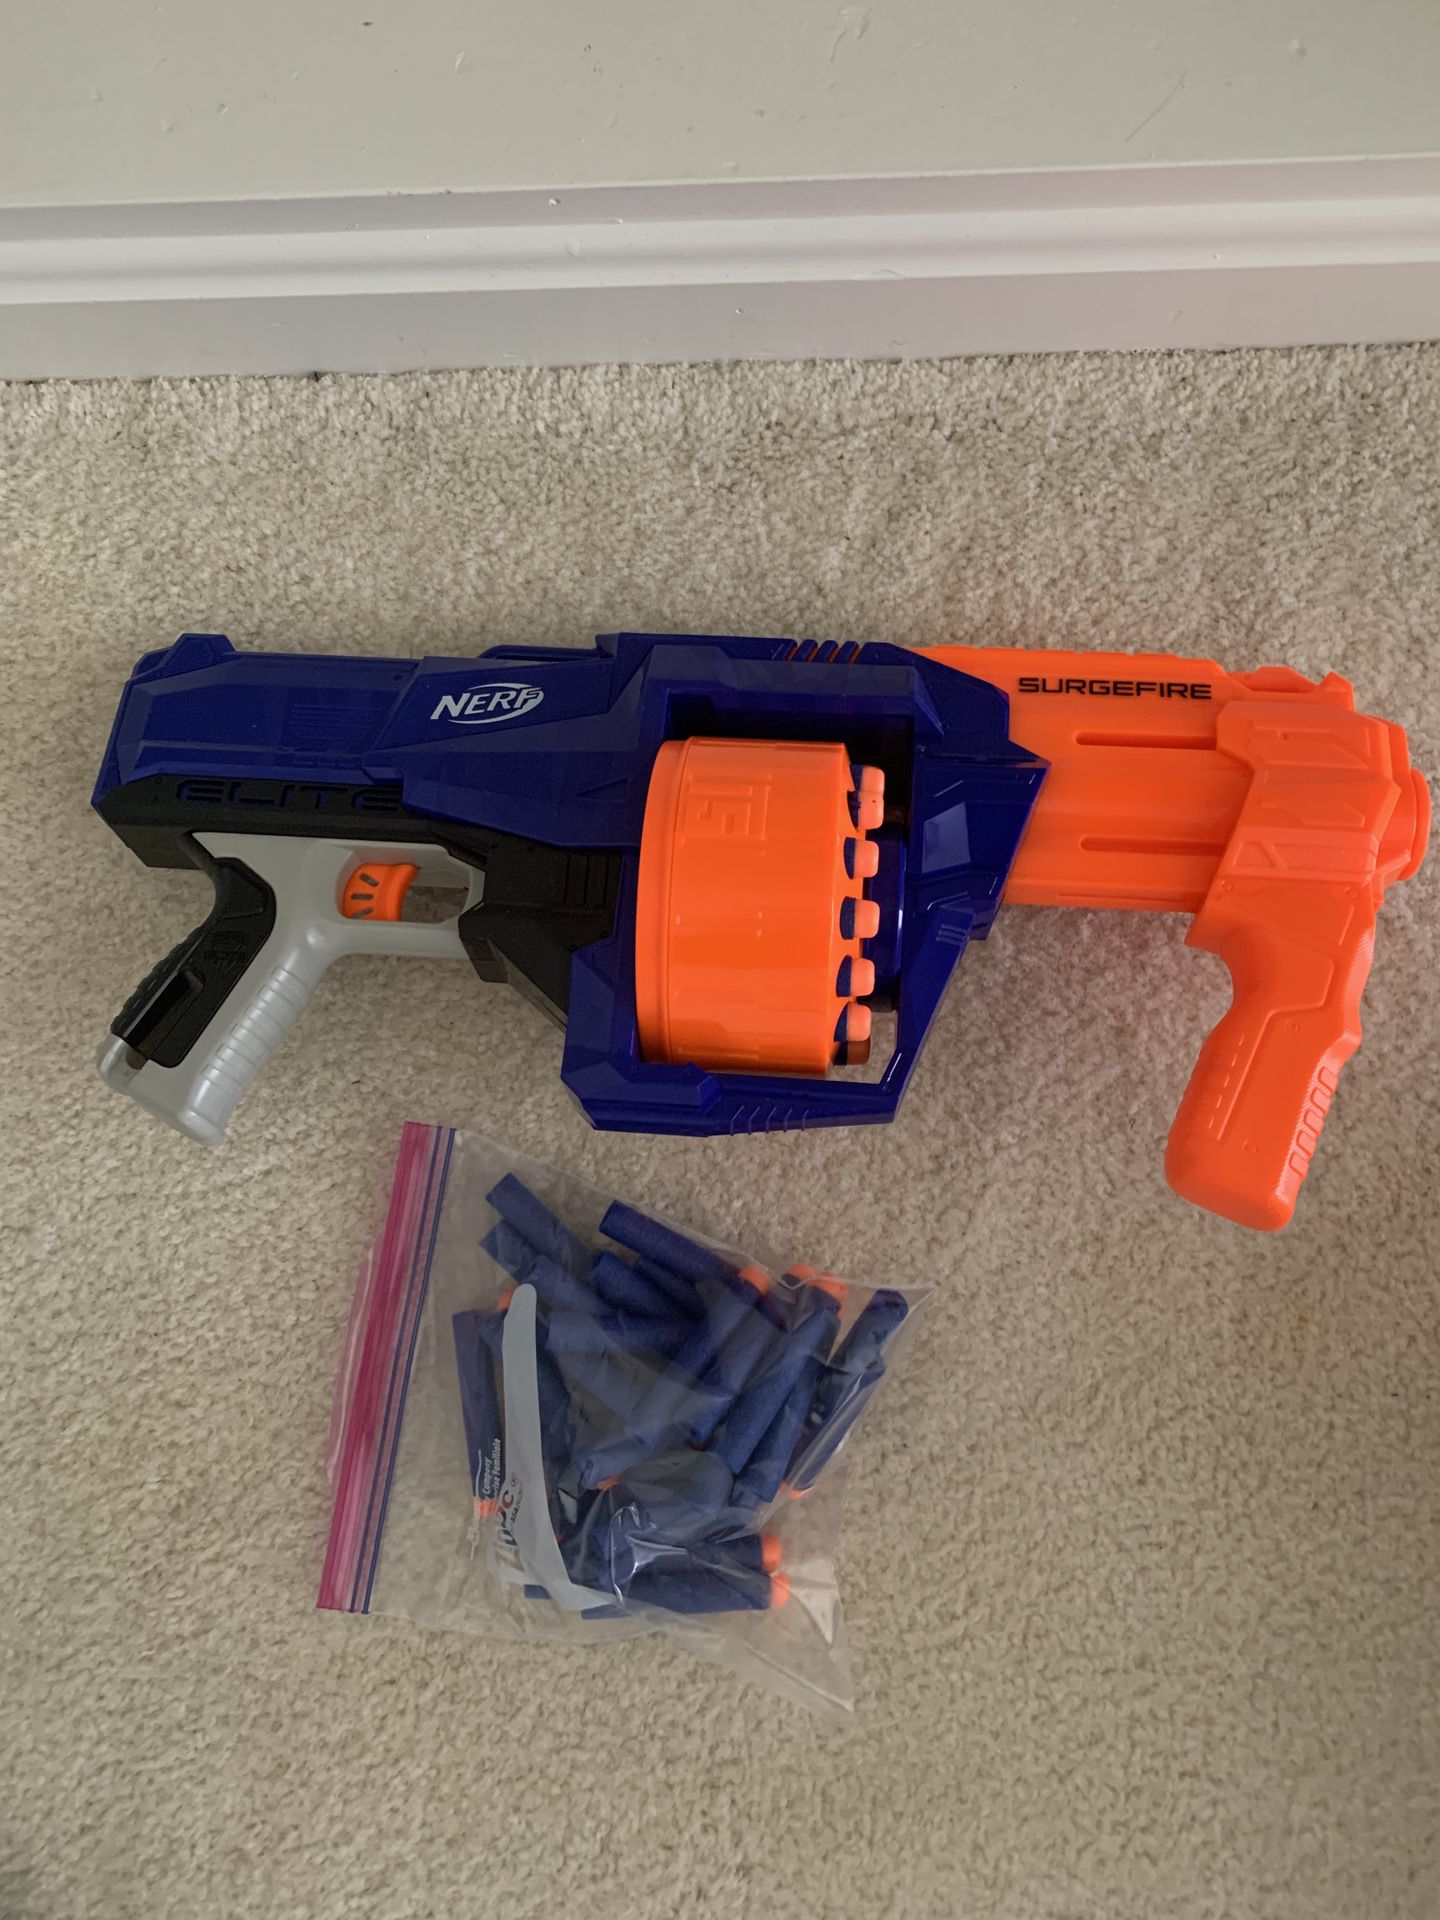 Nerf gun toy